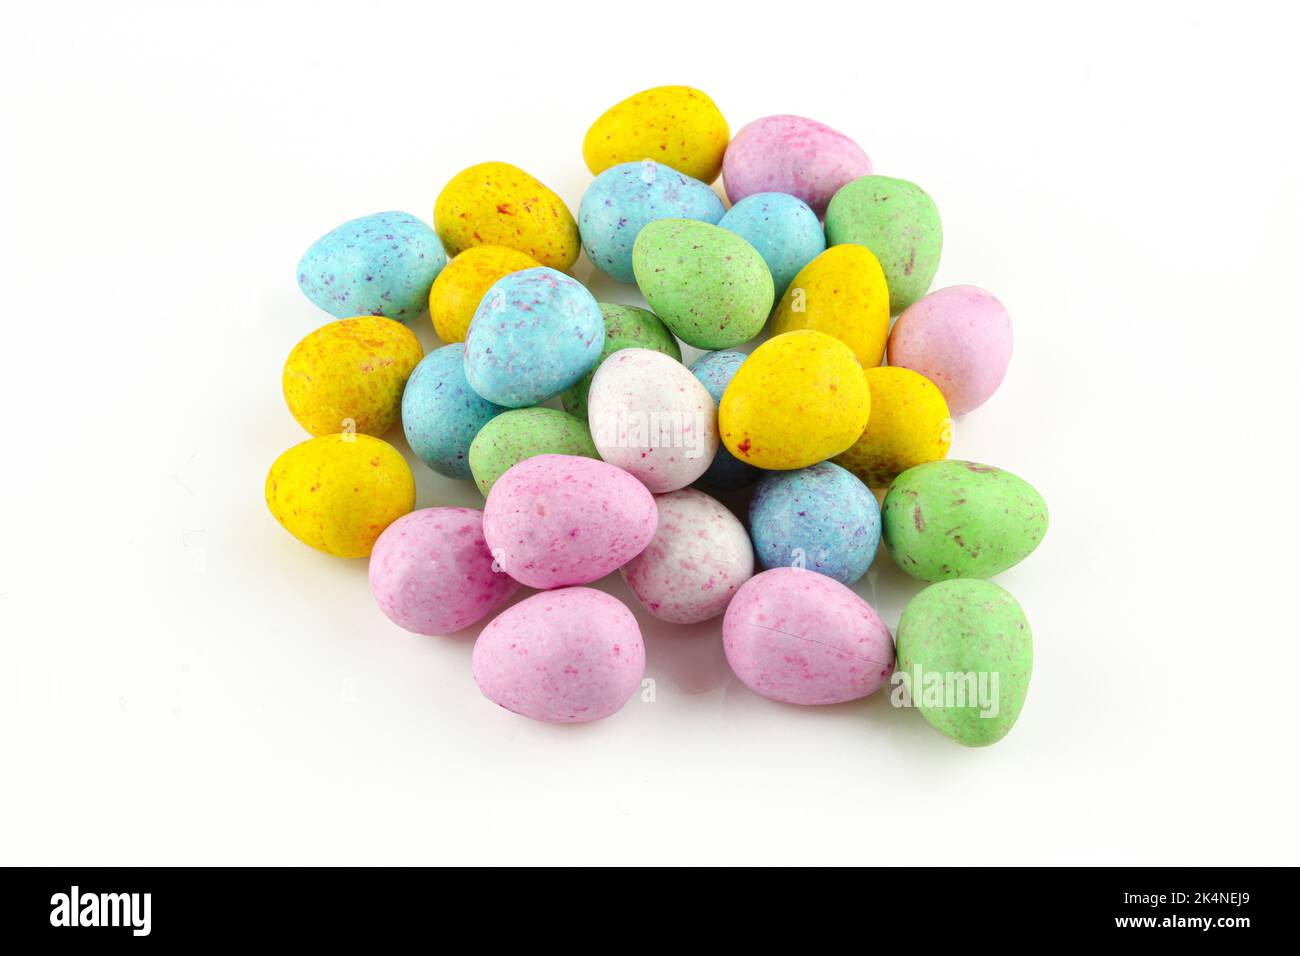 Caramelle al cioccolato colorate a forma di uovo isolate su sfondo bianco Foto Stock